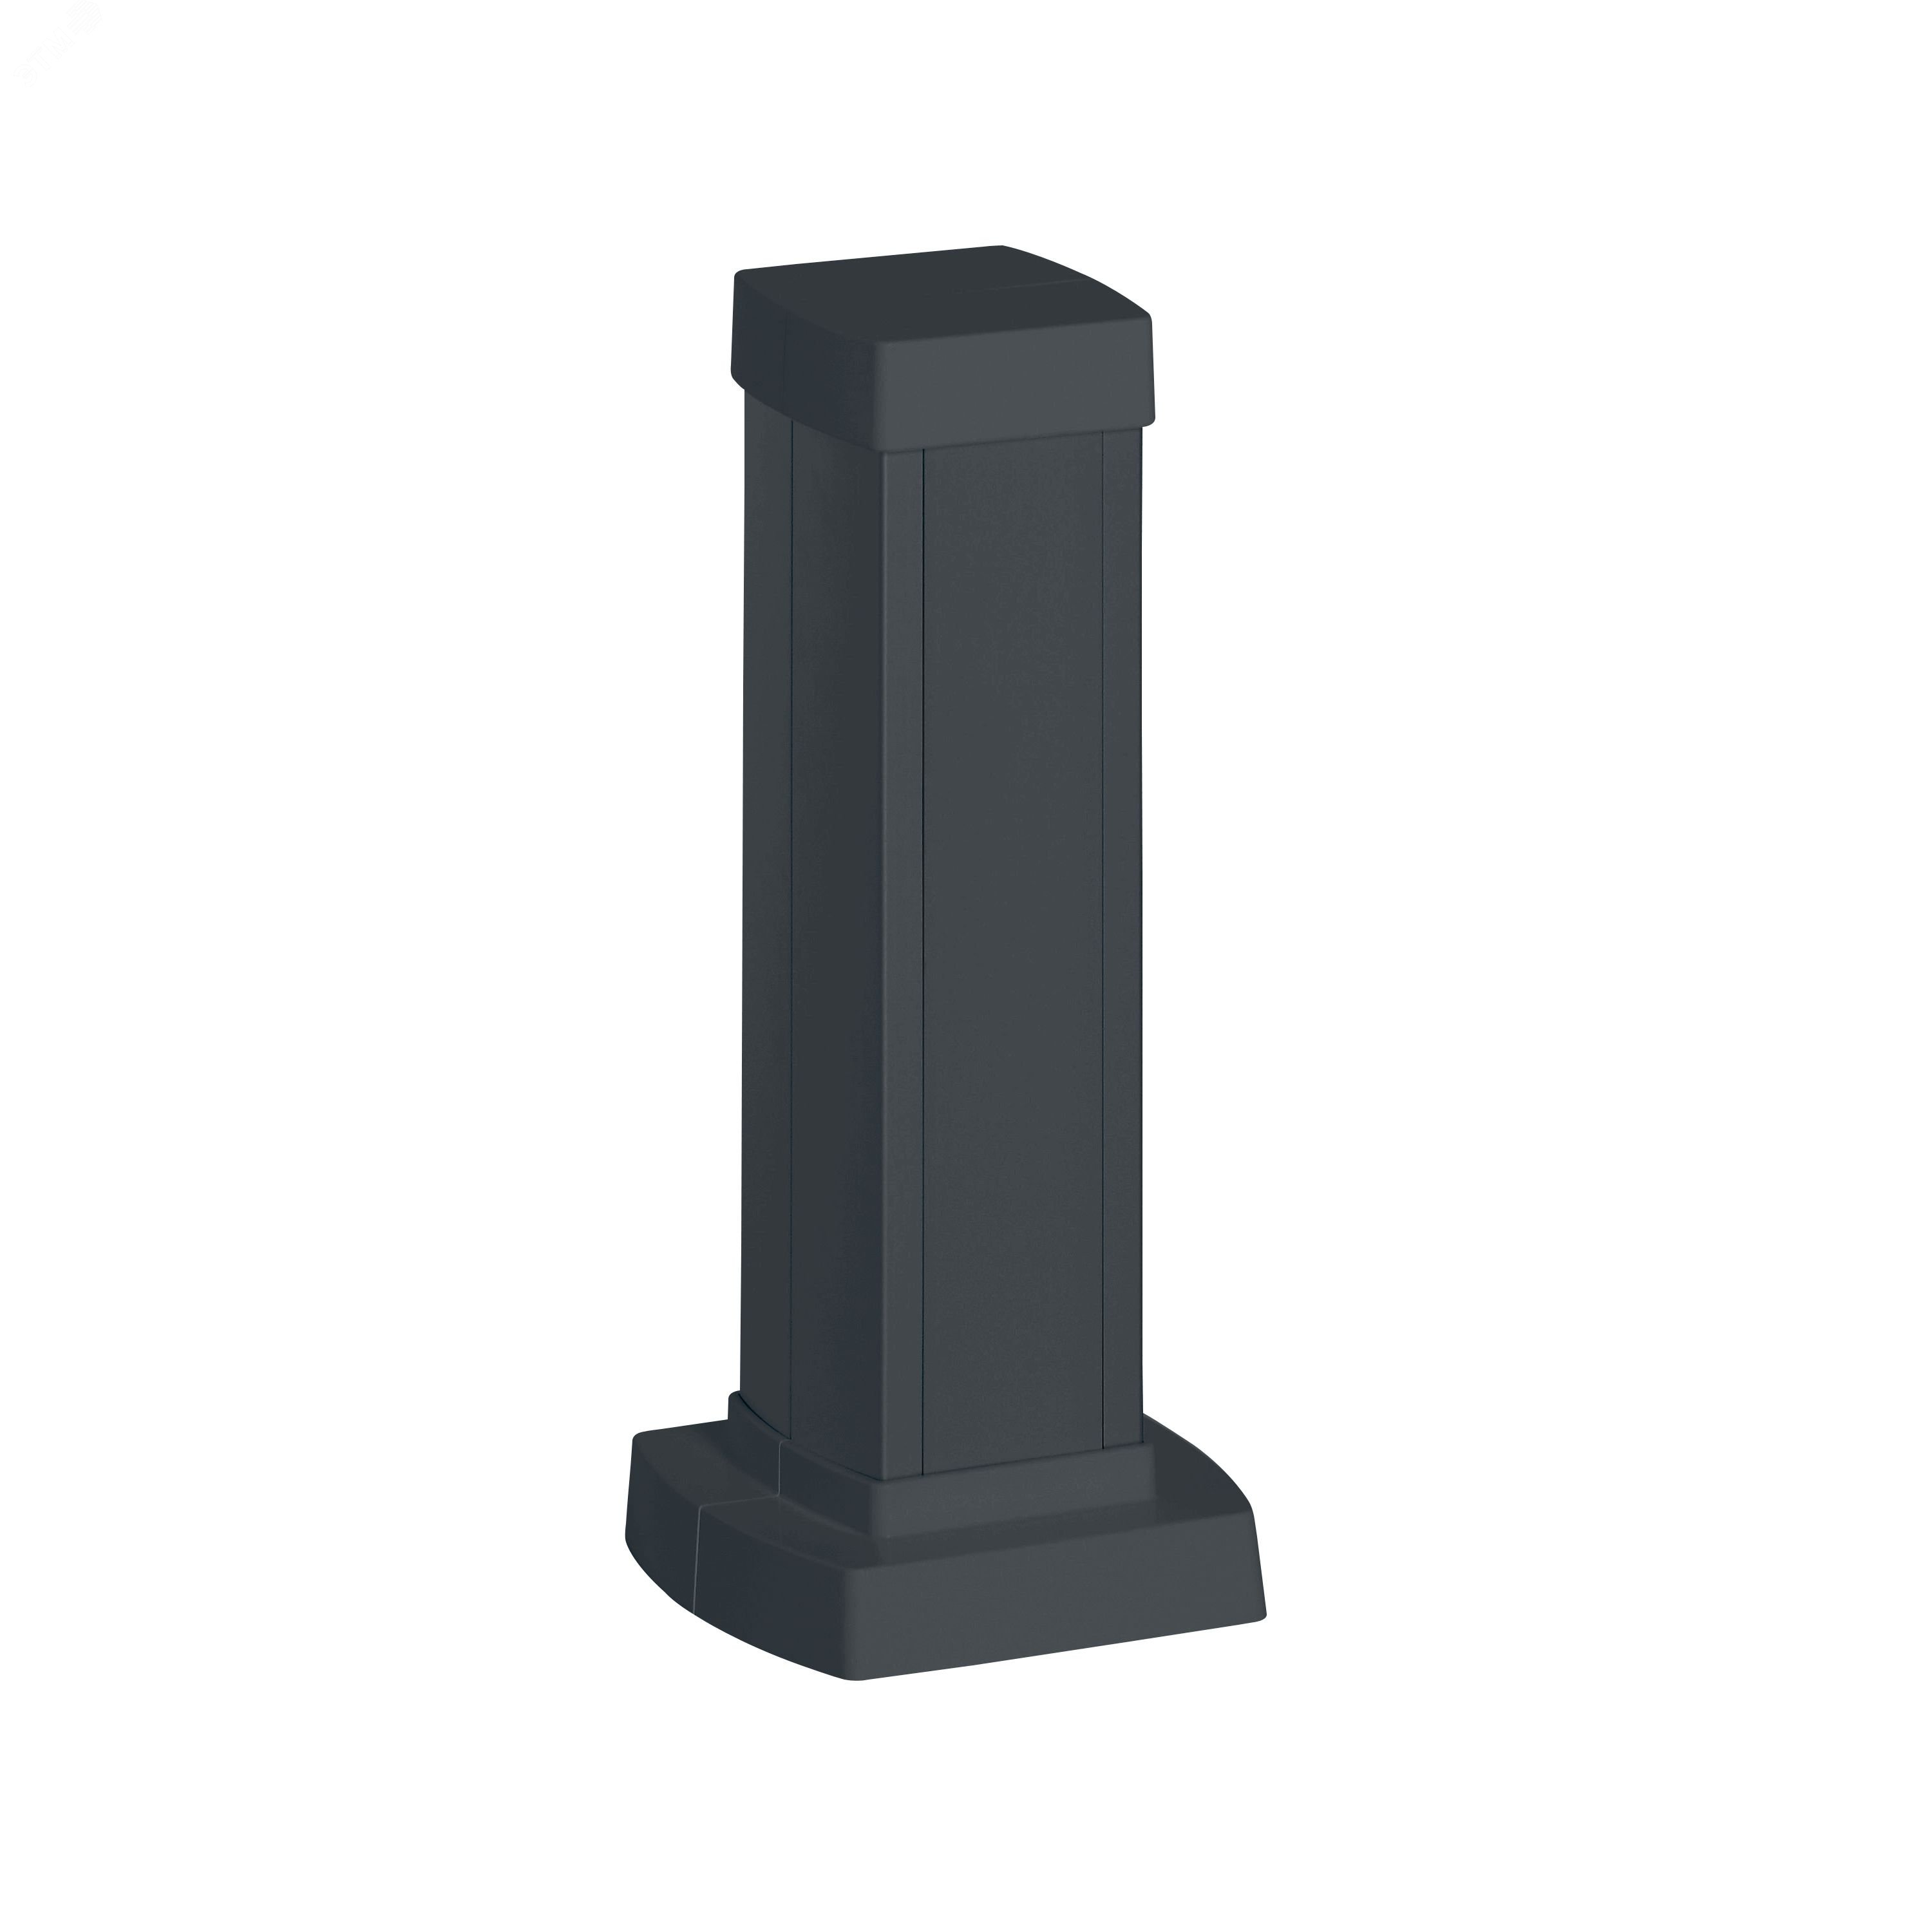 Snap-On мини-колонна алюминиевая с крышкой из пластика 1 секция, высота 0,3 метра, цвет черный 653002 Legrand - превью 2